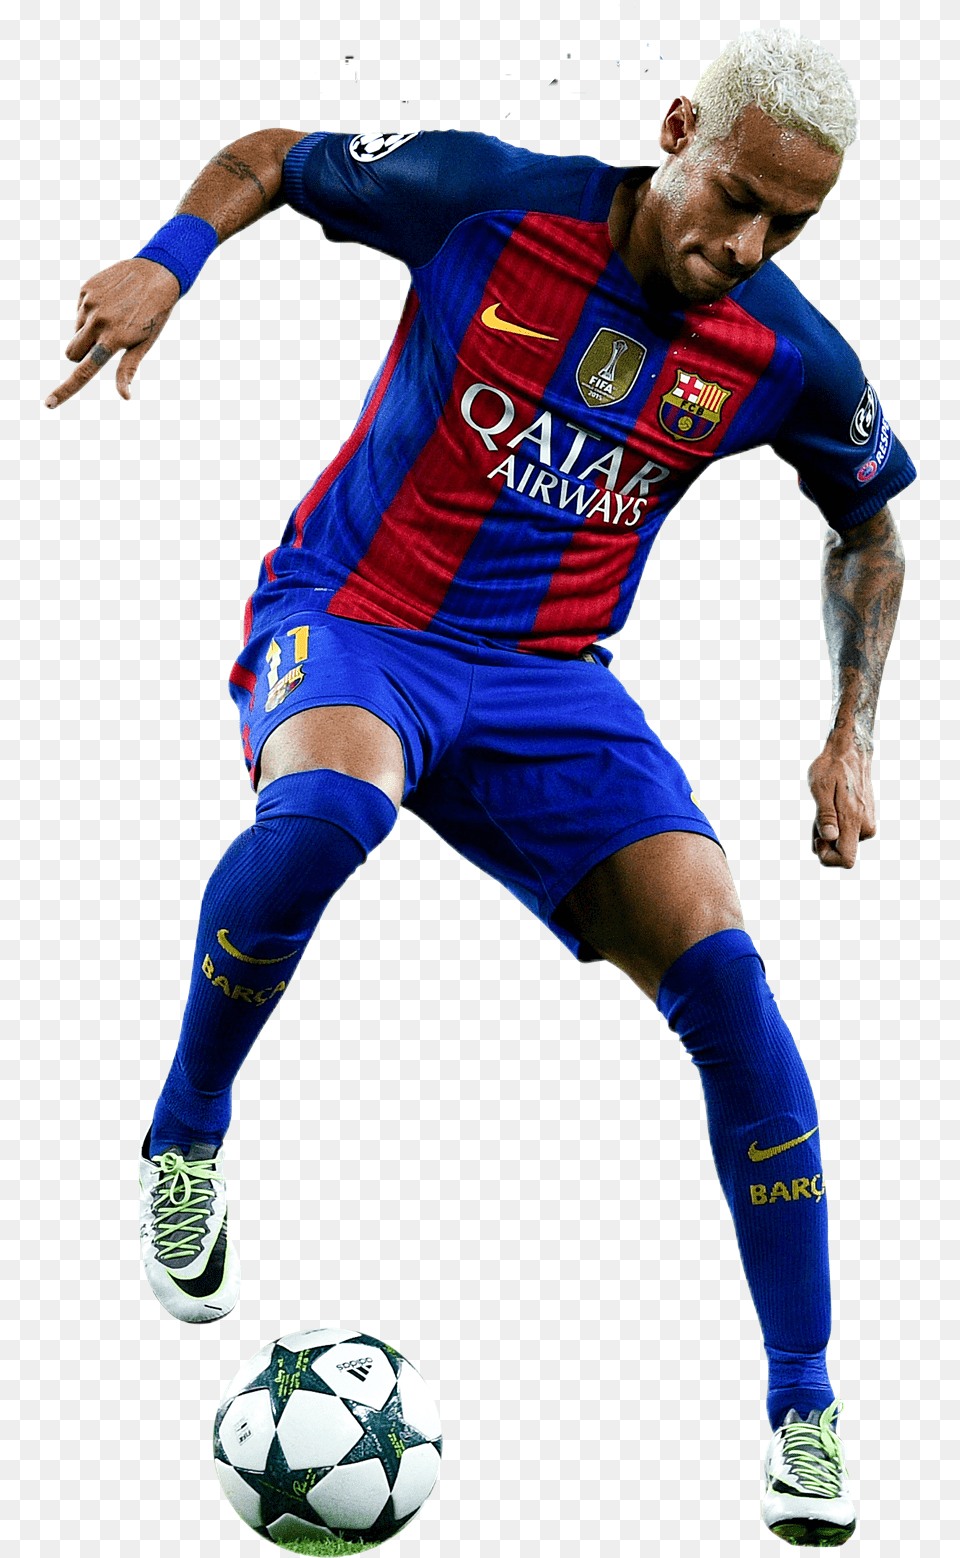 Neymar Jr Barcelona Kick Up A Soccer Ball, Sport, Soccer Ball, Football, Person Png